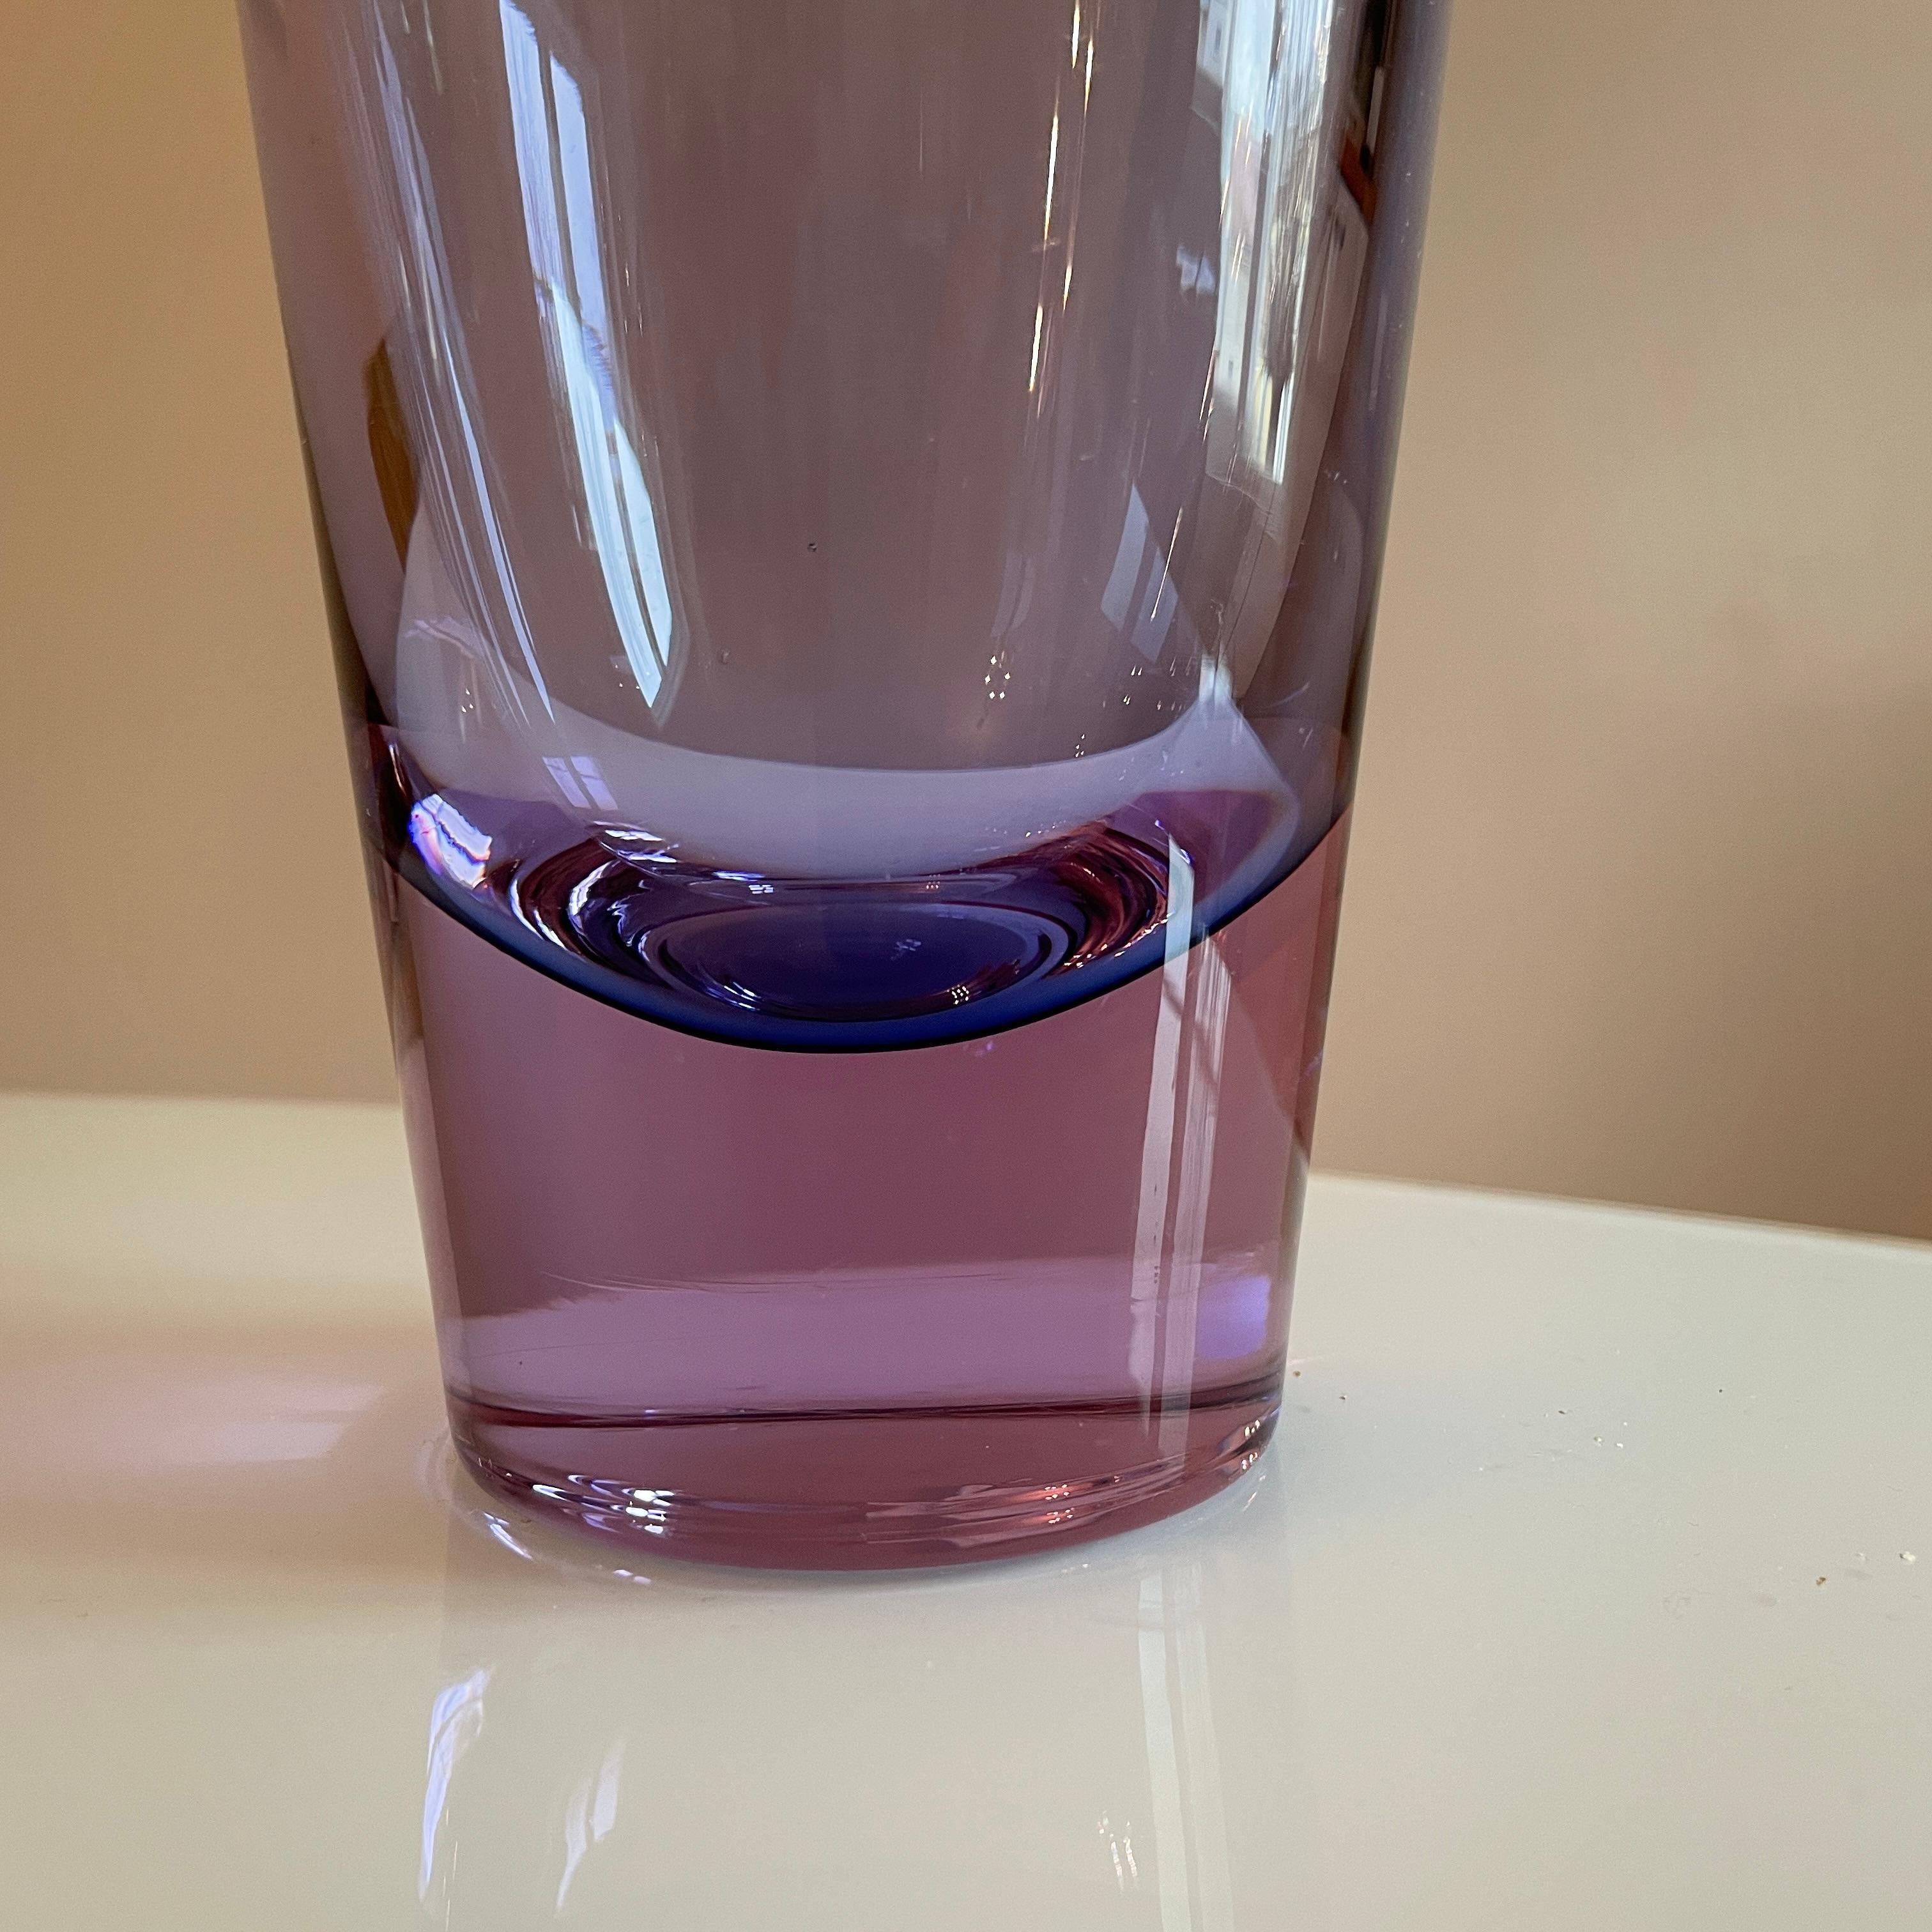 Tapio Wirkkala Vase 3647 - Iittala Finland - Light Purple Color - 1960's 1